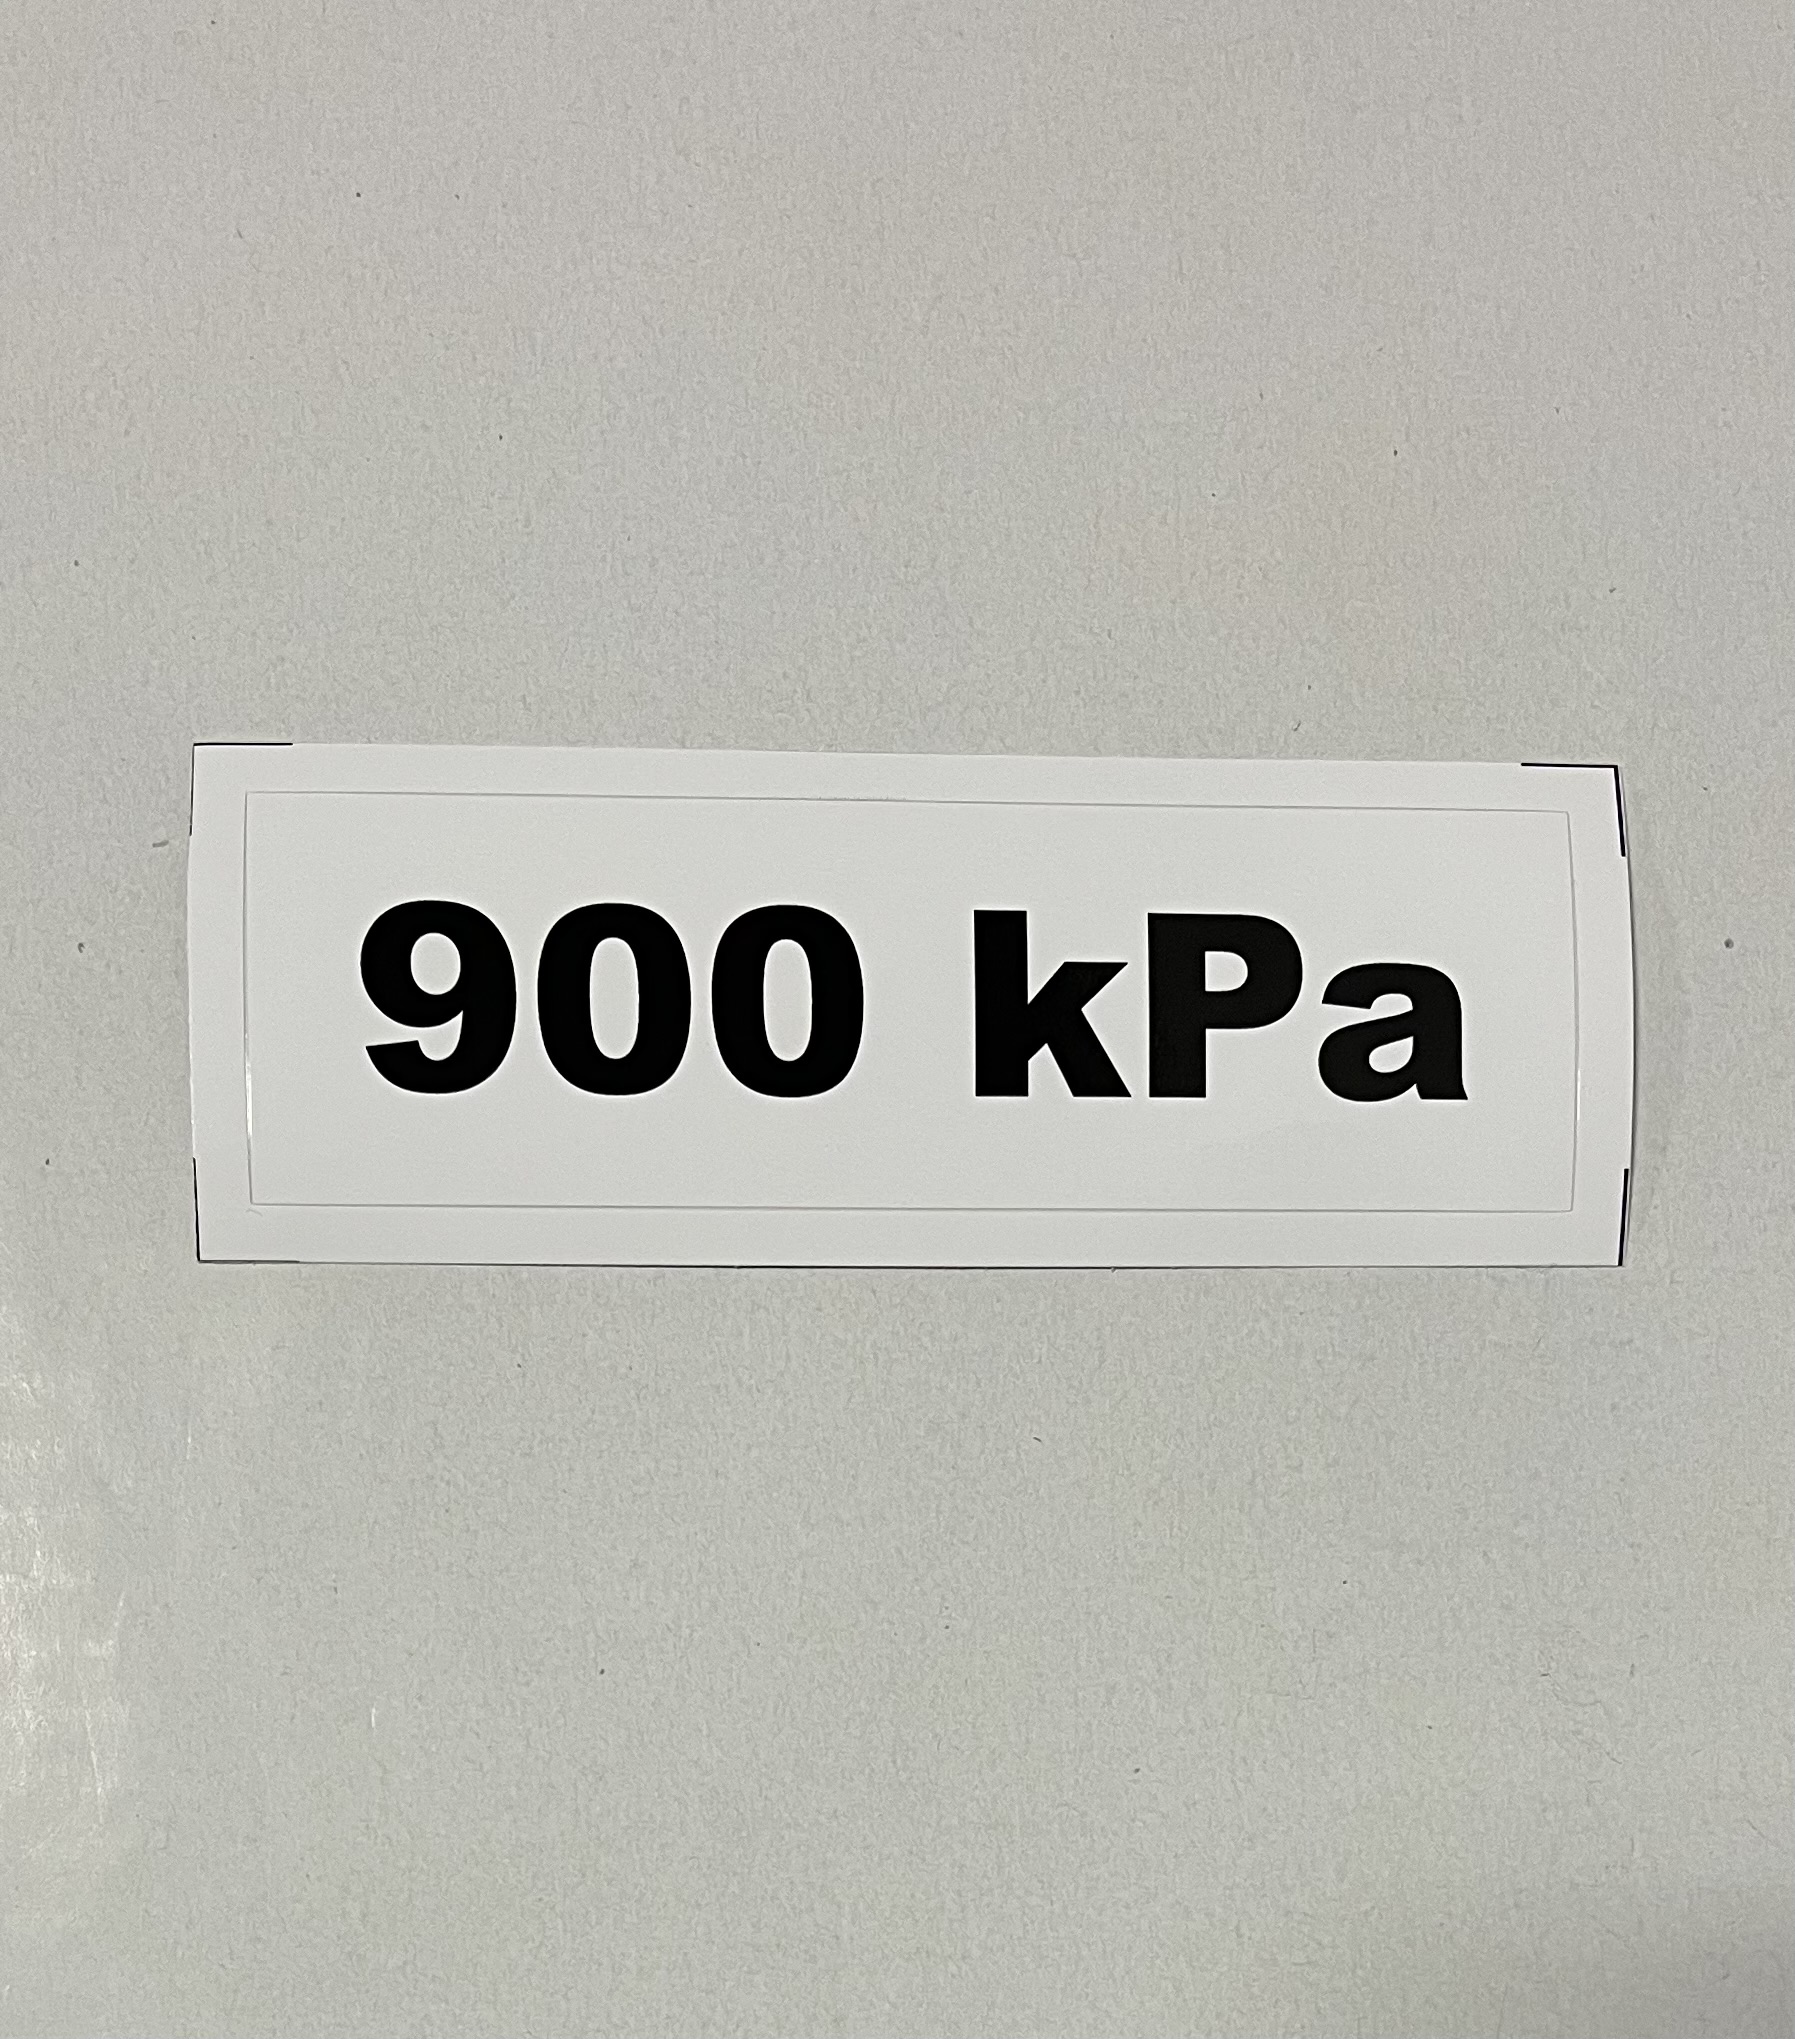 Označenie kPa 900